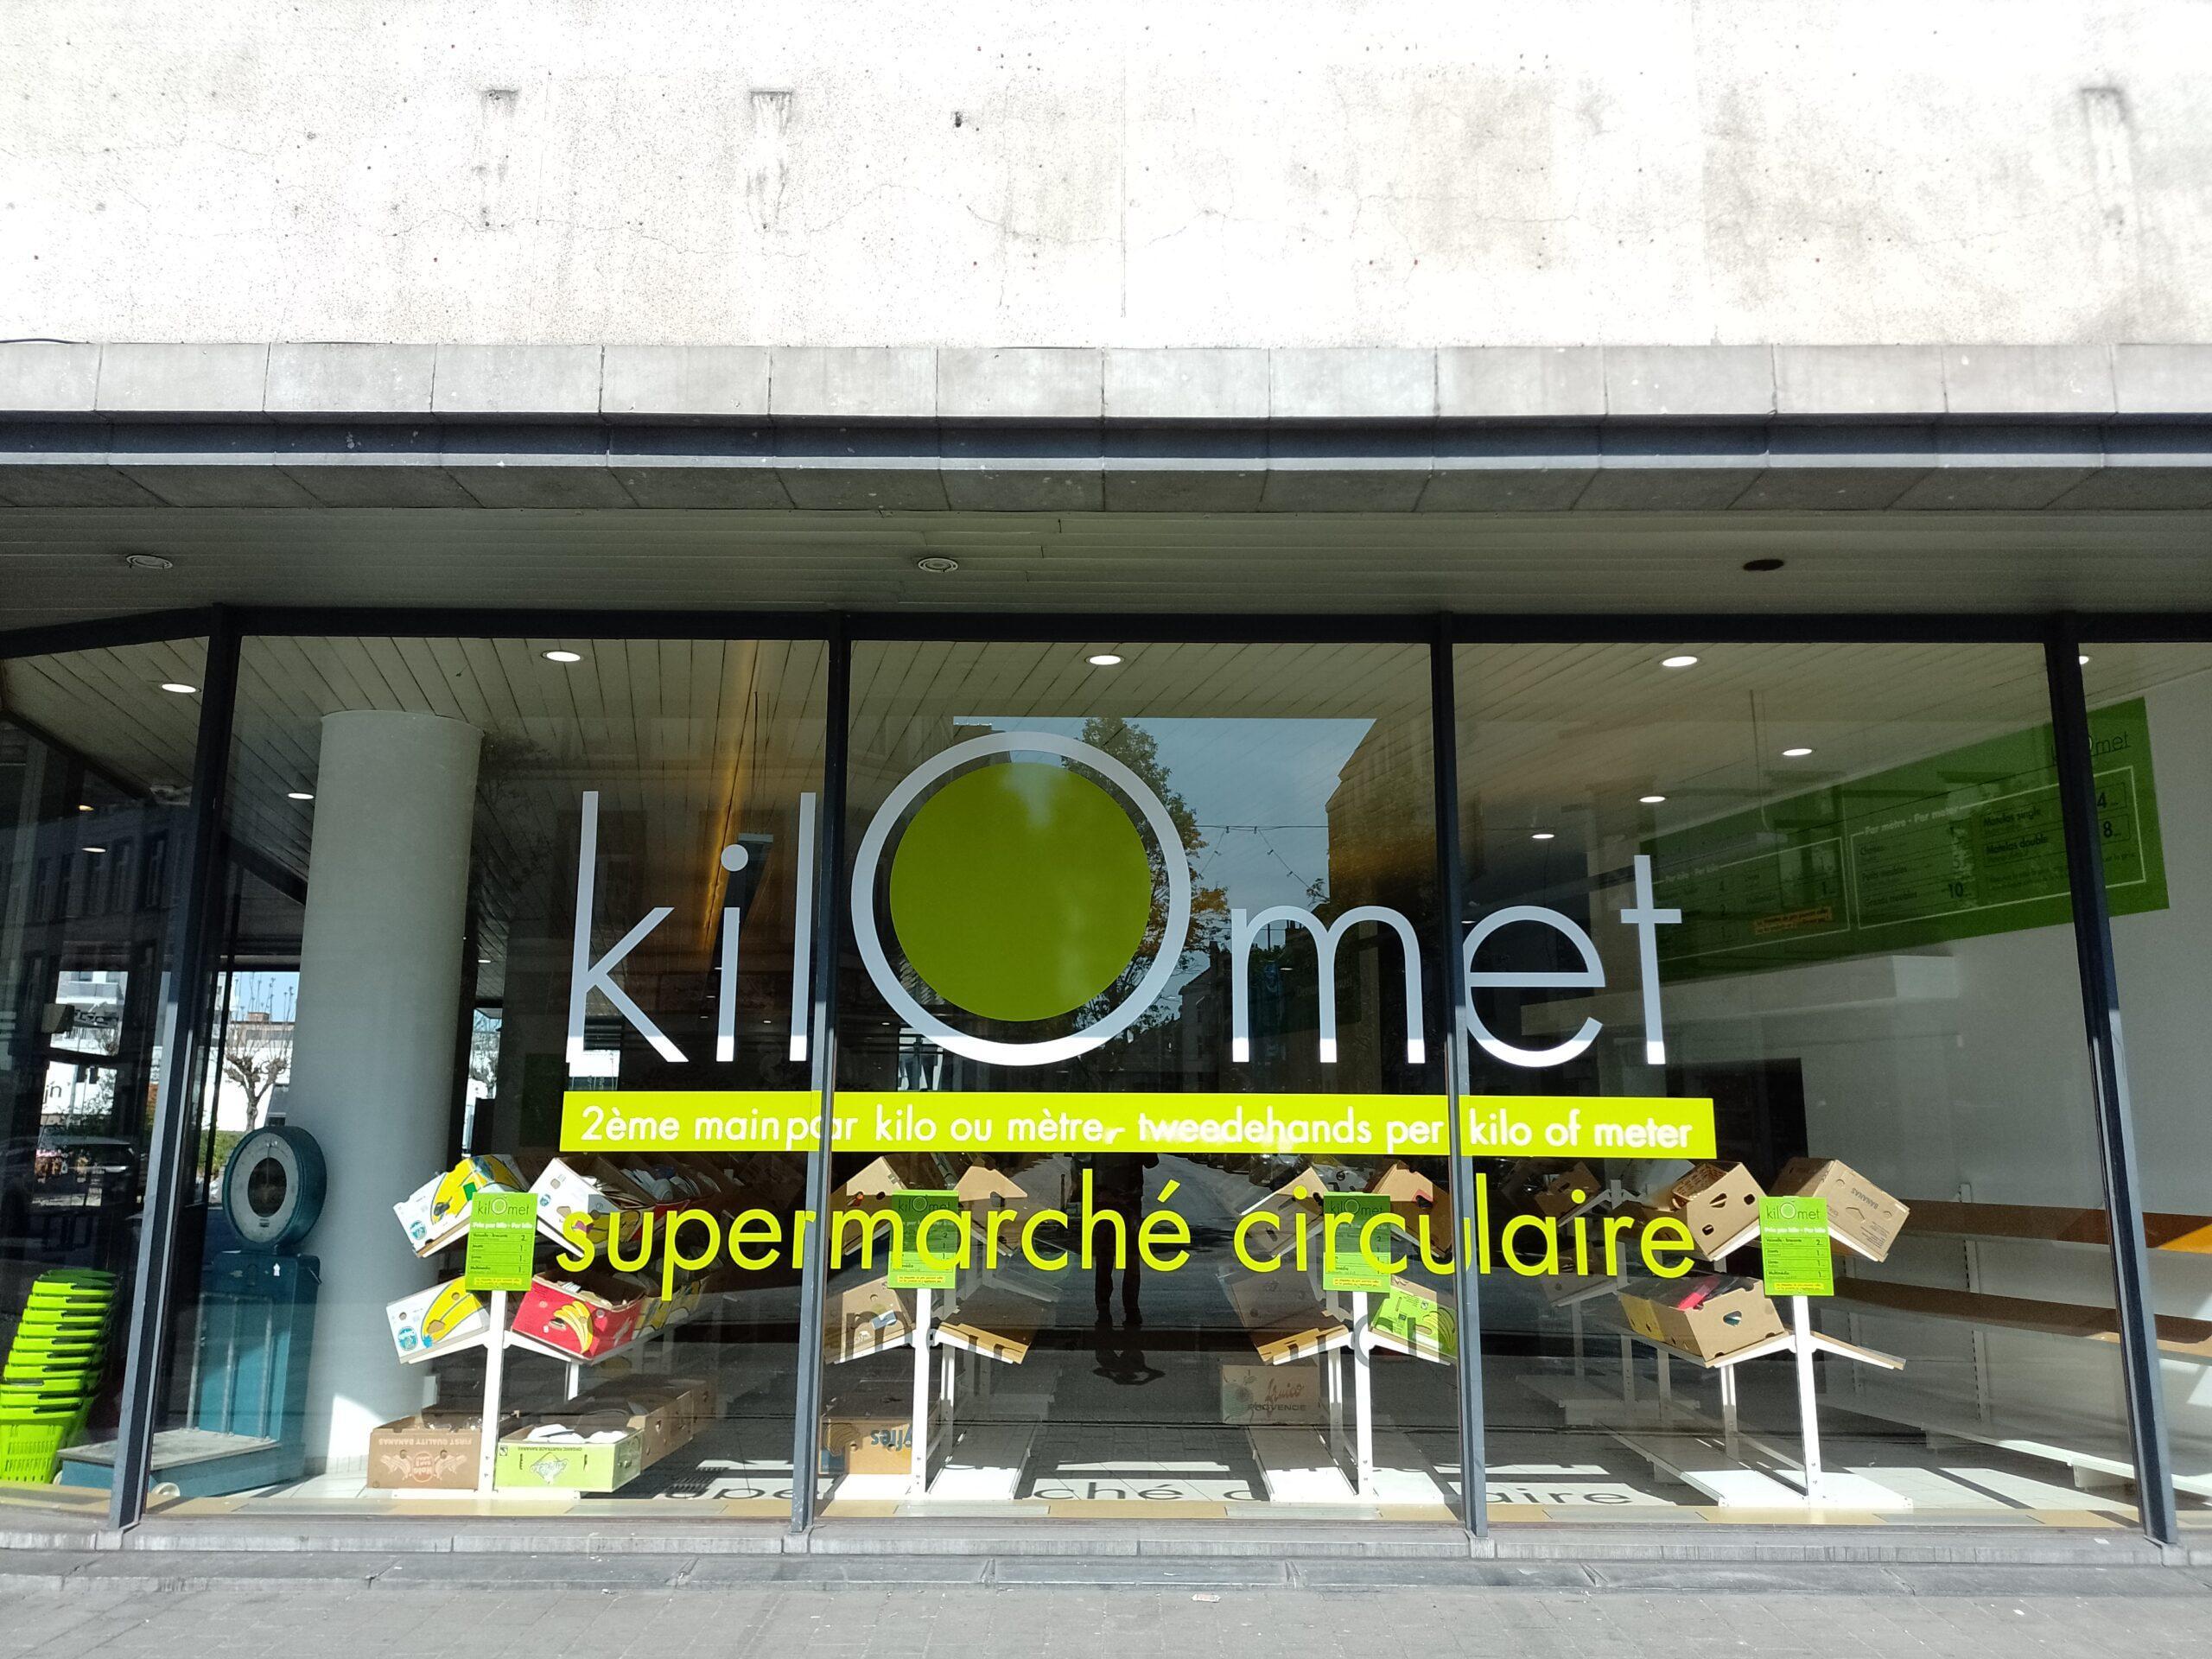 Kilomet - supermarché circulaire